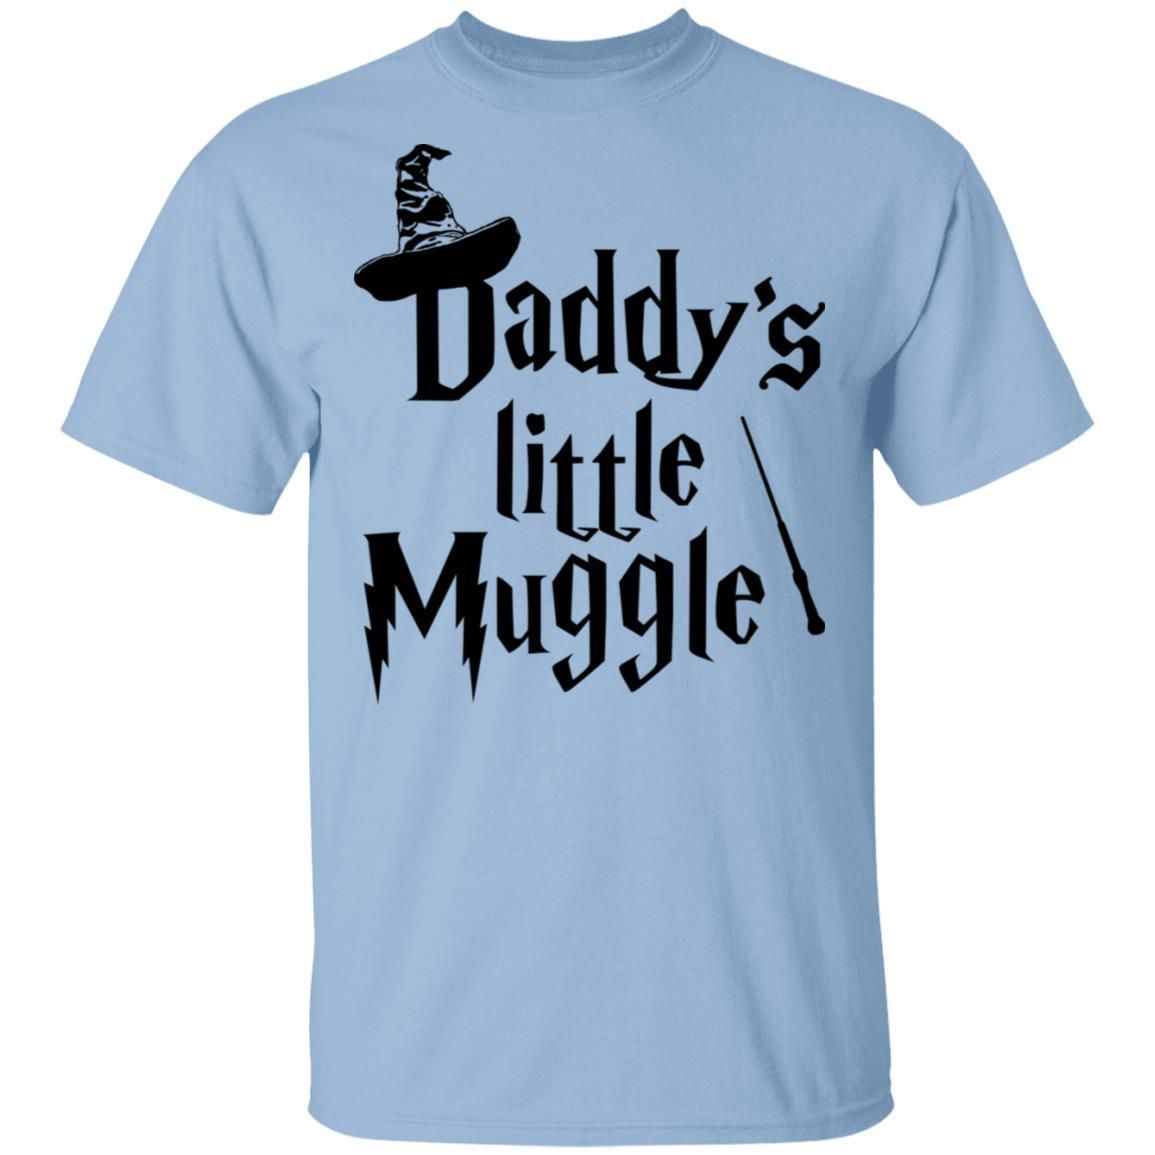 Daddy's Little Muggle shirts